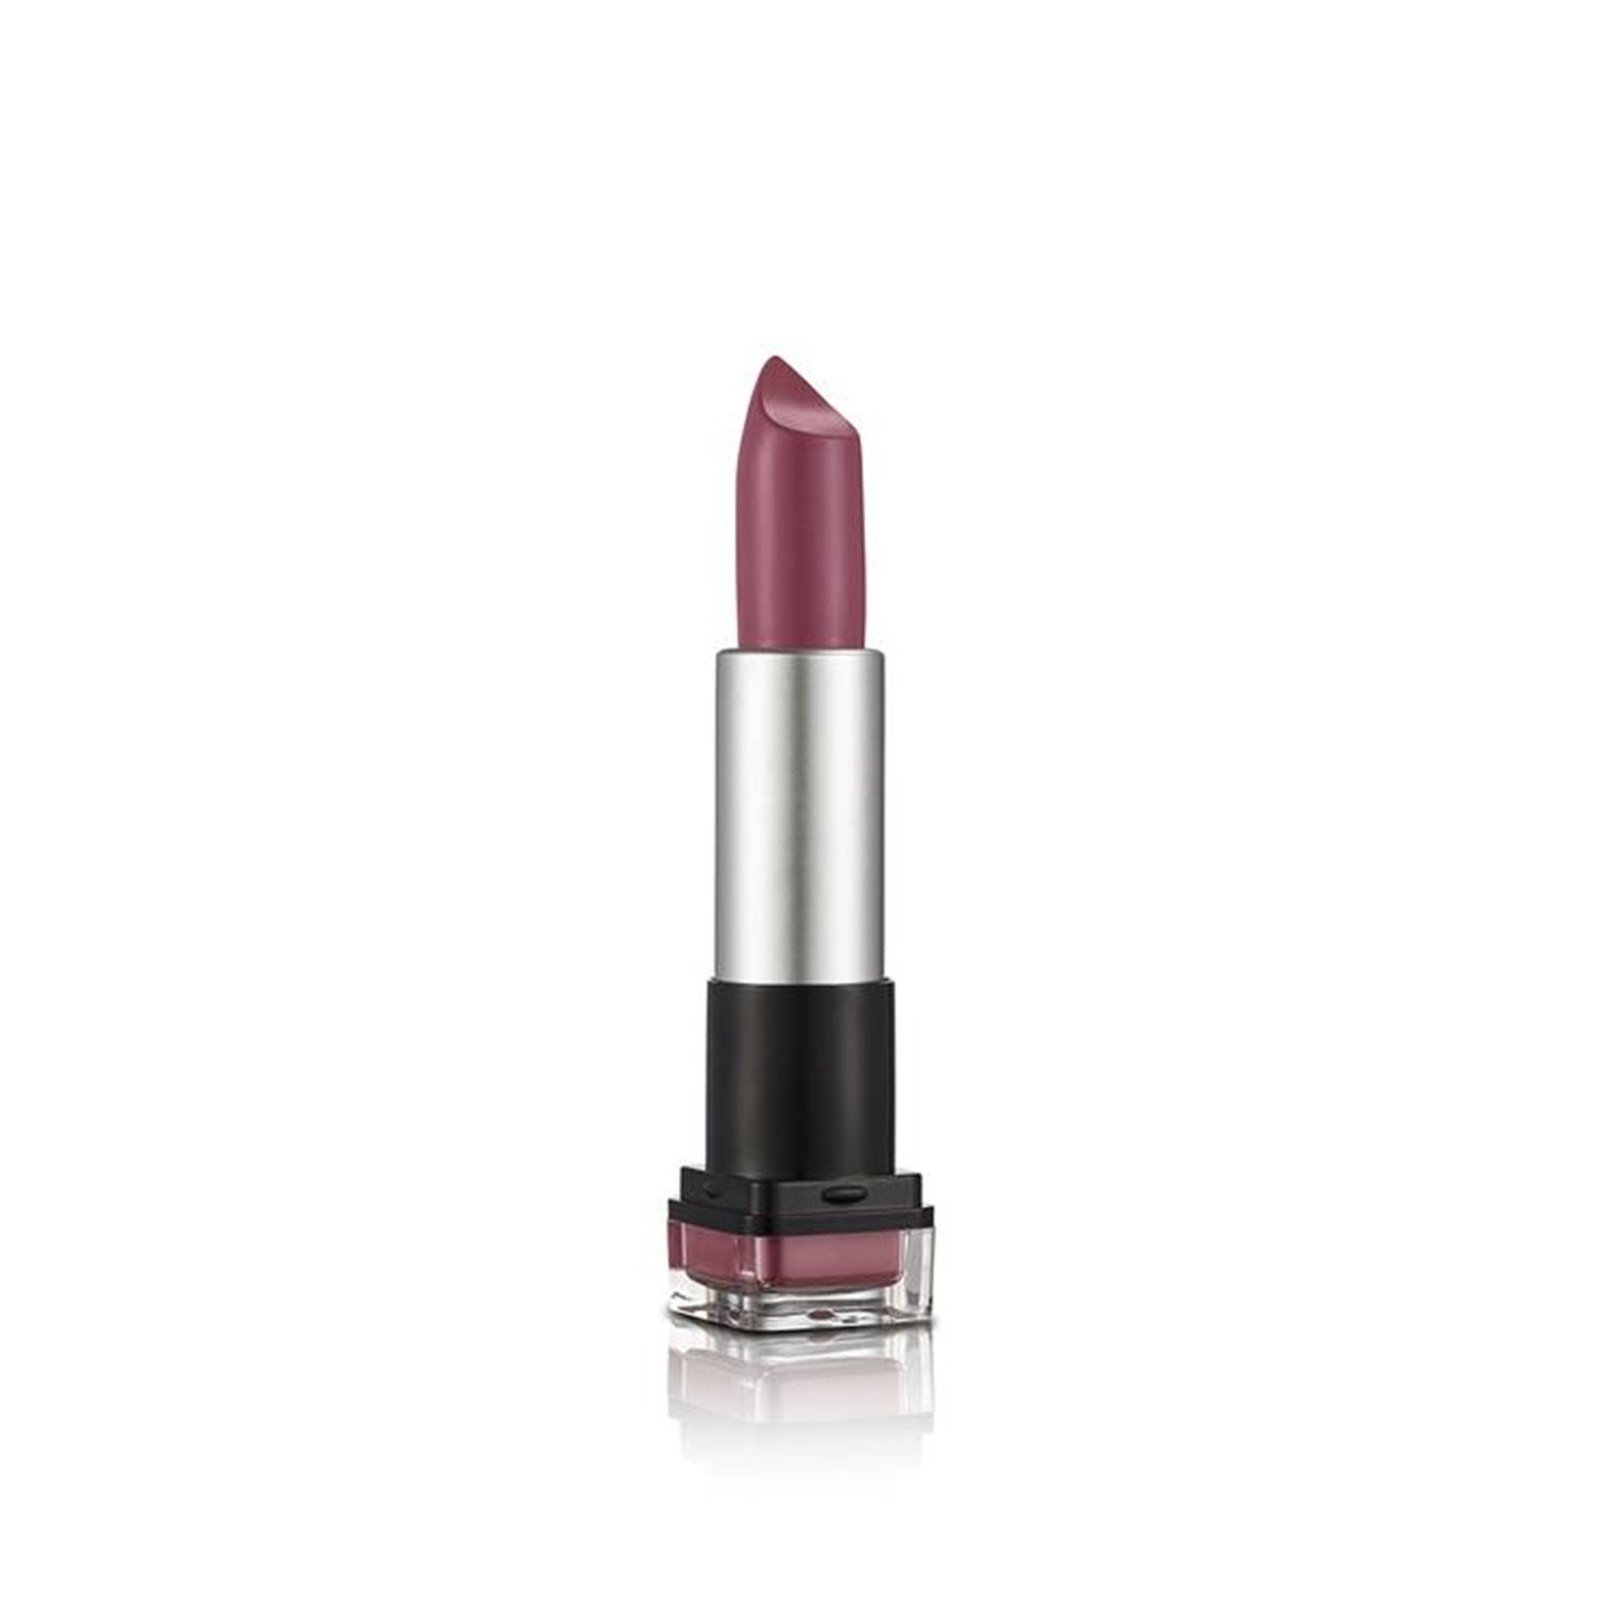 Flormar HD Weightless Matte Lipstick 19 Millenial Pink 4g (0.14 oz)